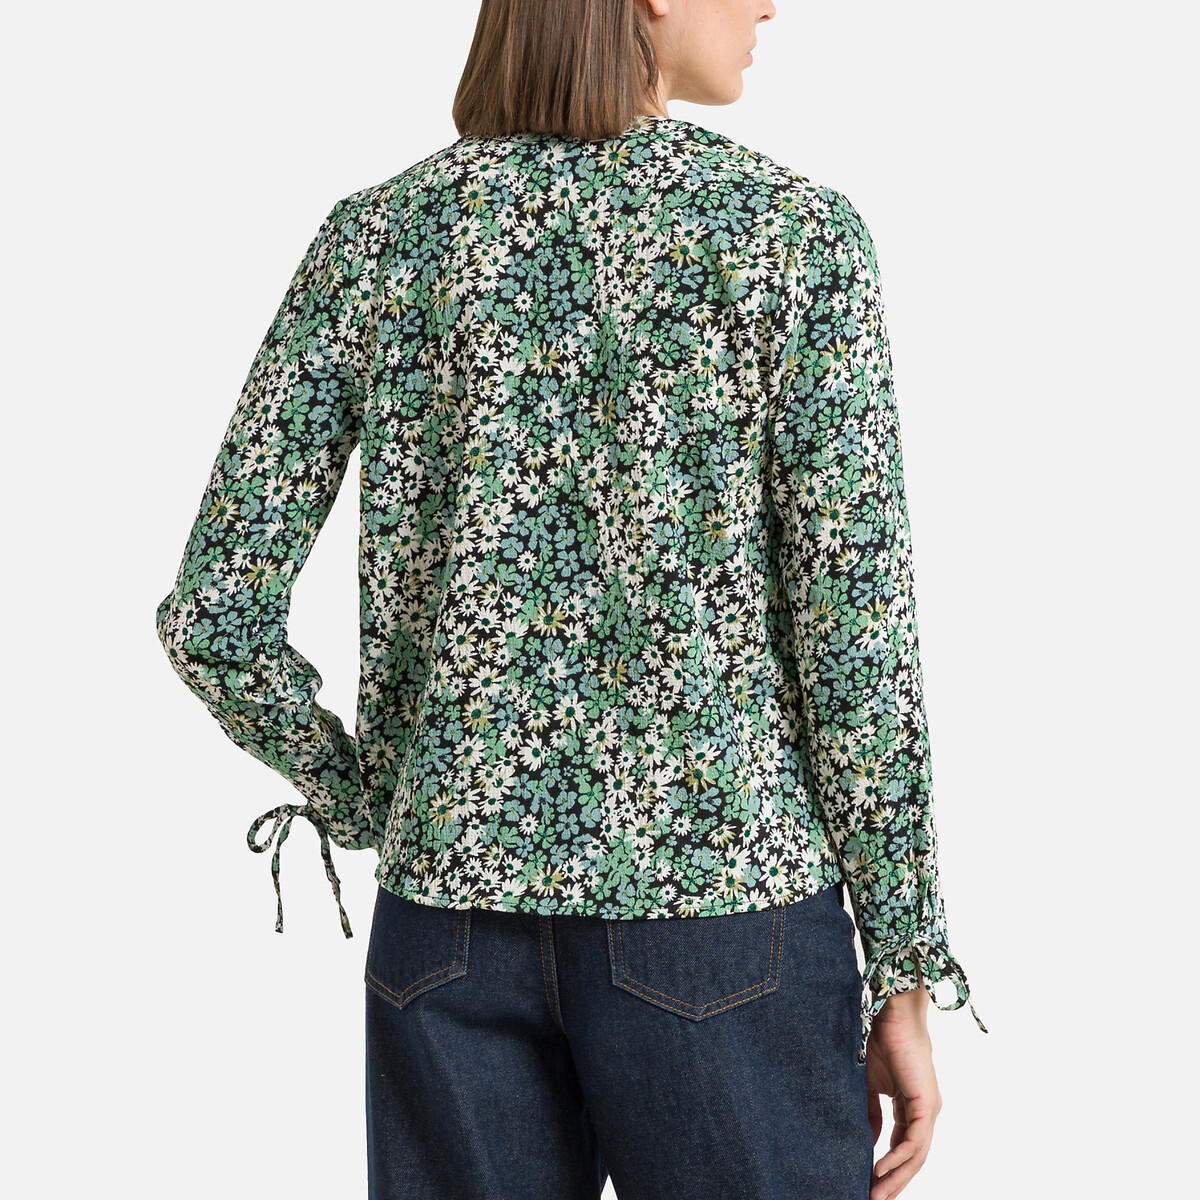 Блузка С цветочным принтом и V-образным вырезом L зеленый LaRedoute, размер L - фото 4